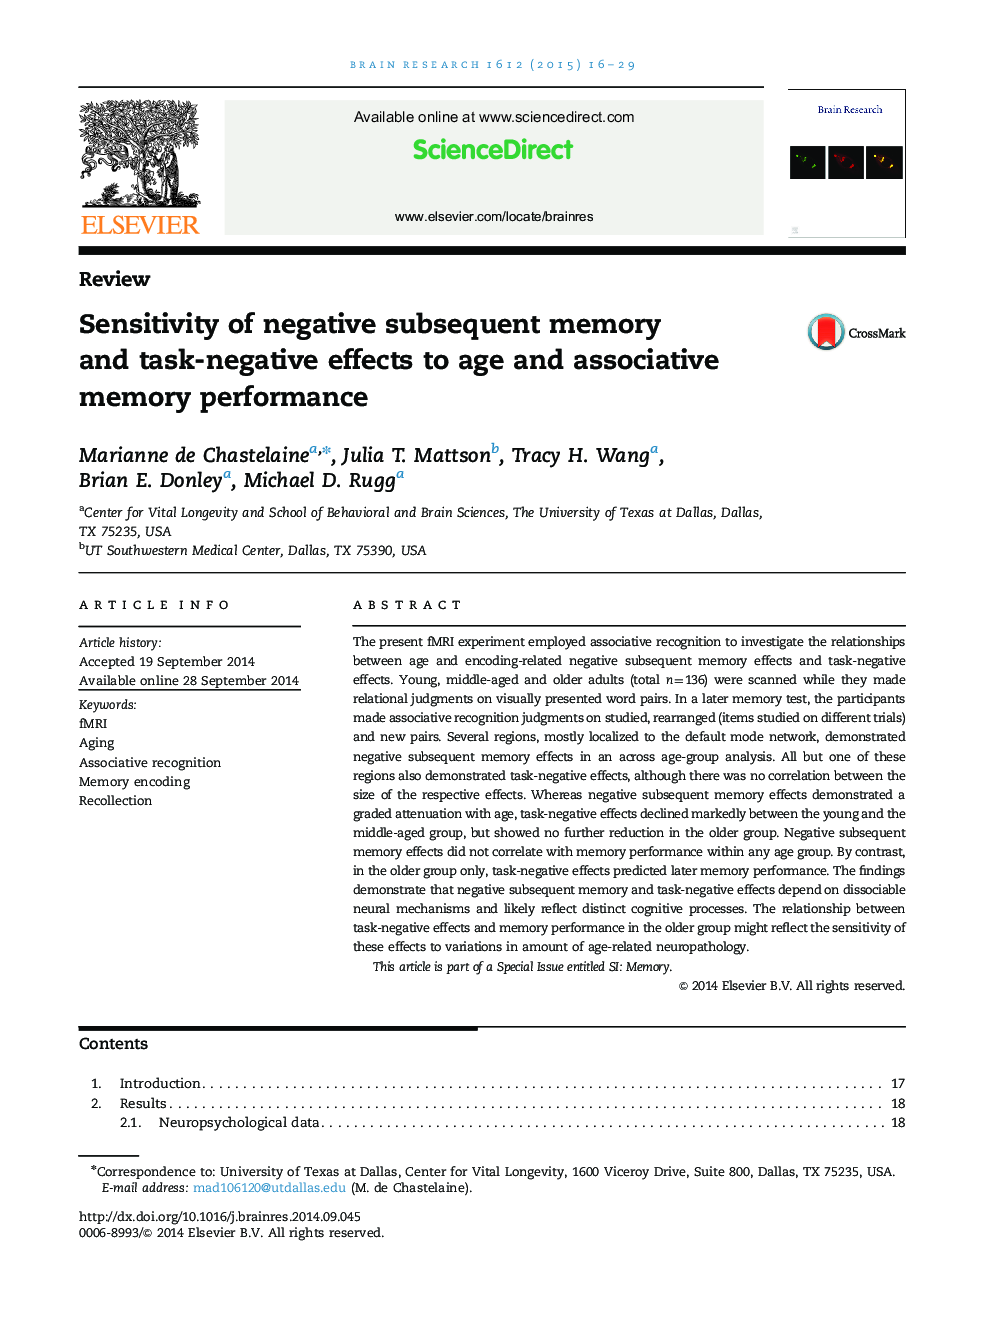 بررسی حساسیت حافظه بعدی منفی و اثرات منفی کار به سن و عملکرد حافظه انجمنی 